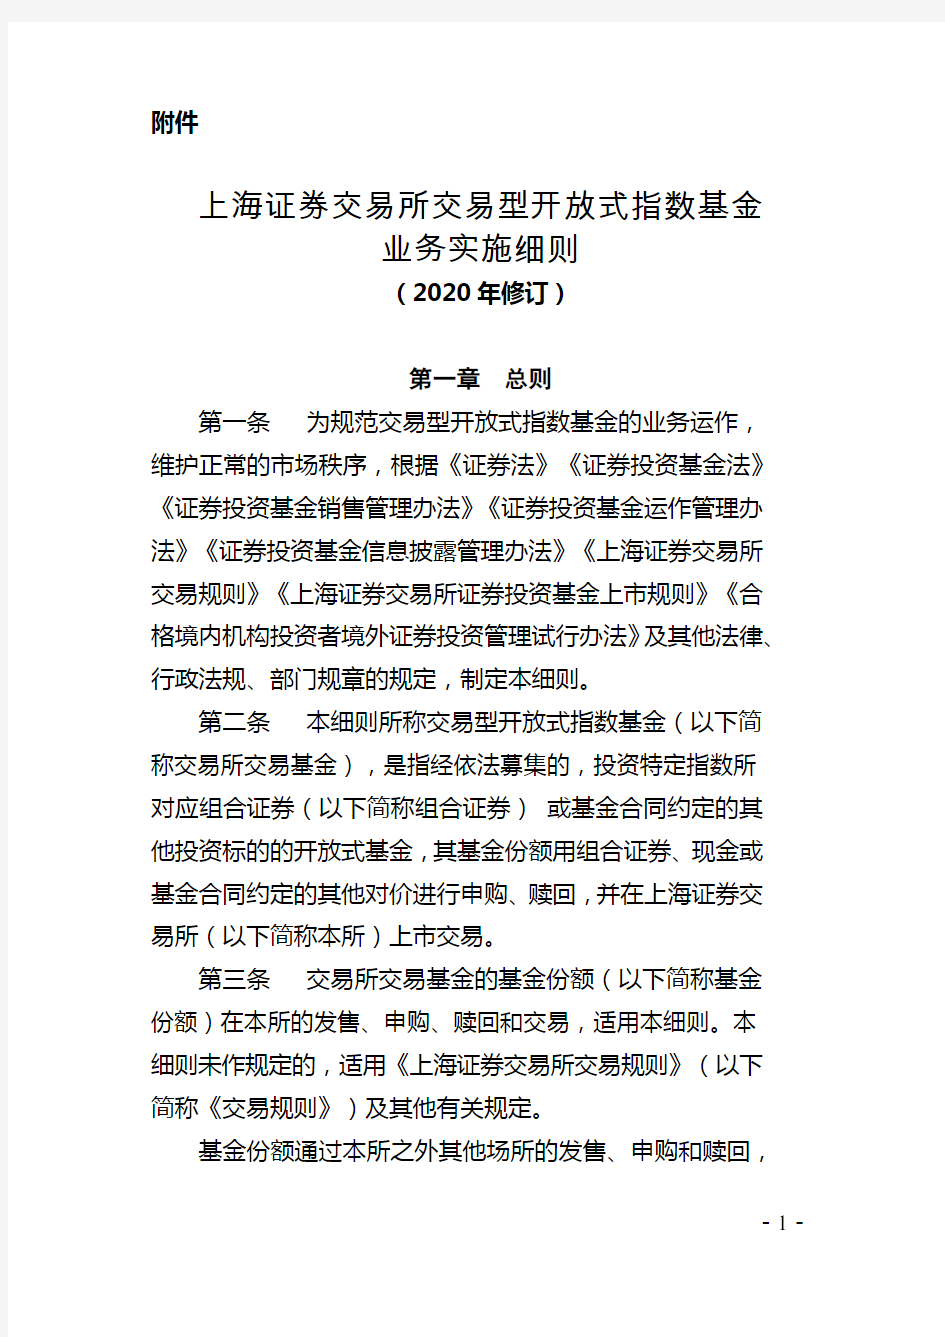 上海证券交易所交易型开放式指数基金业务实施细则(2020年修订)